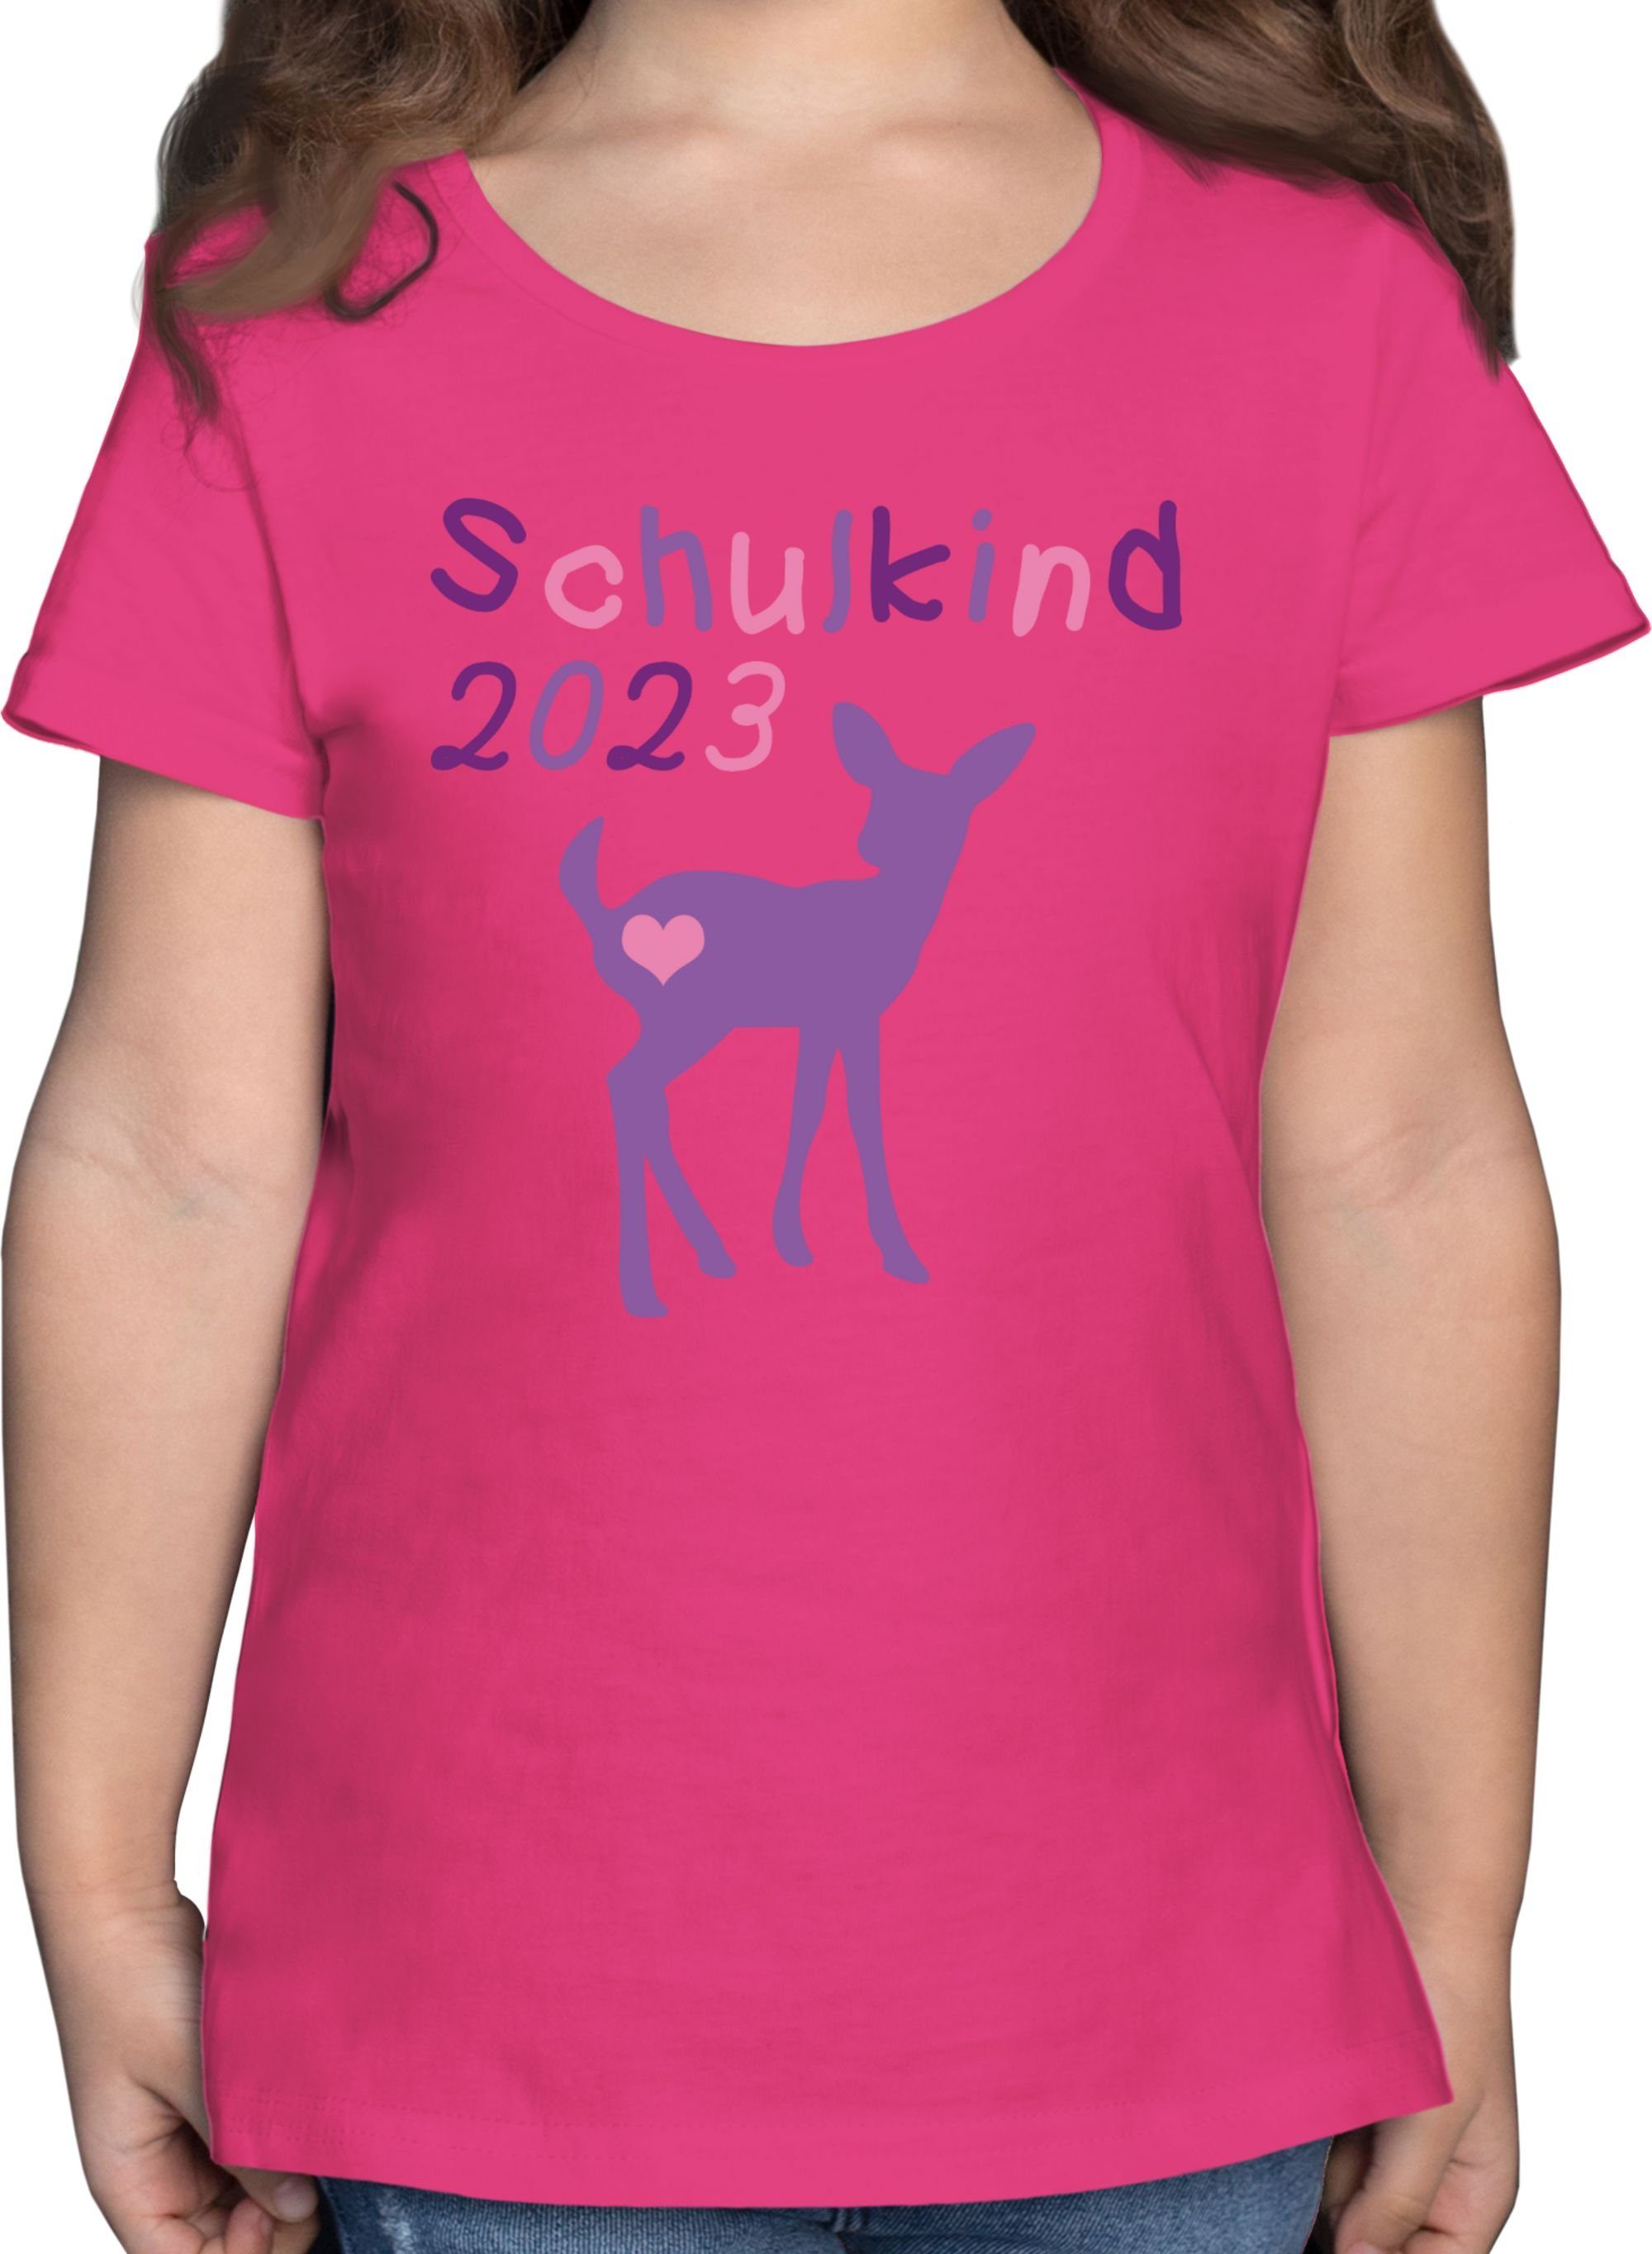 Shirtracer T-Shirt Lila Mädchen Einschulung Reh Fuchsia Schulkind Kitz 3 2023